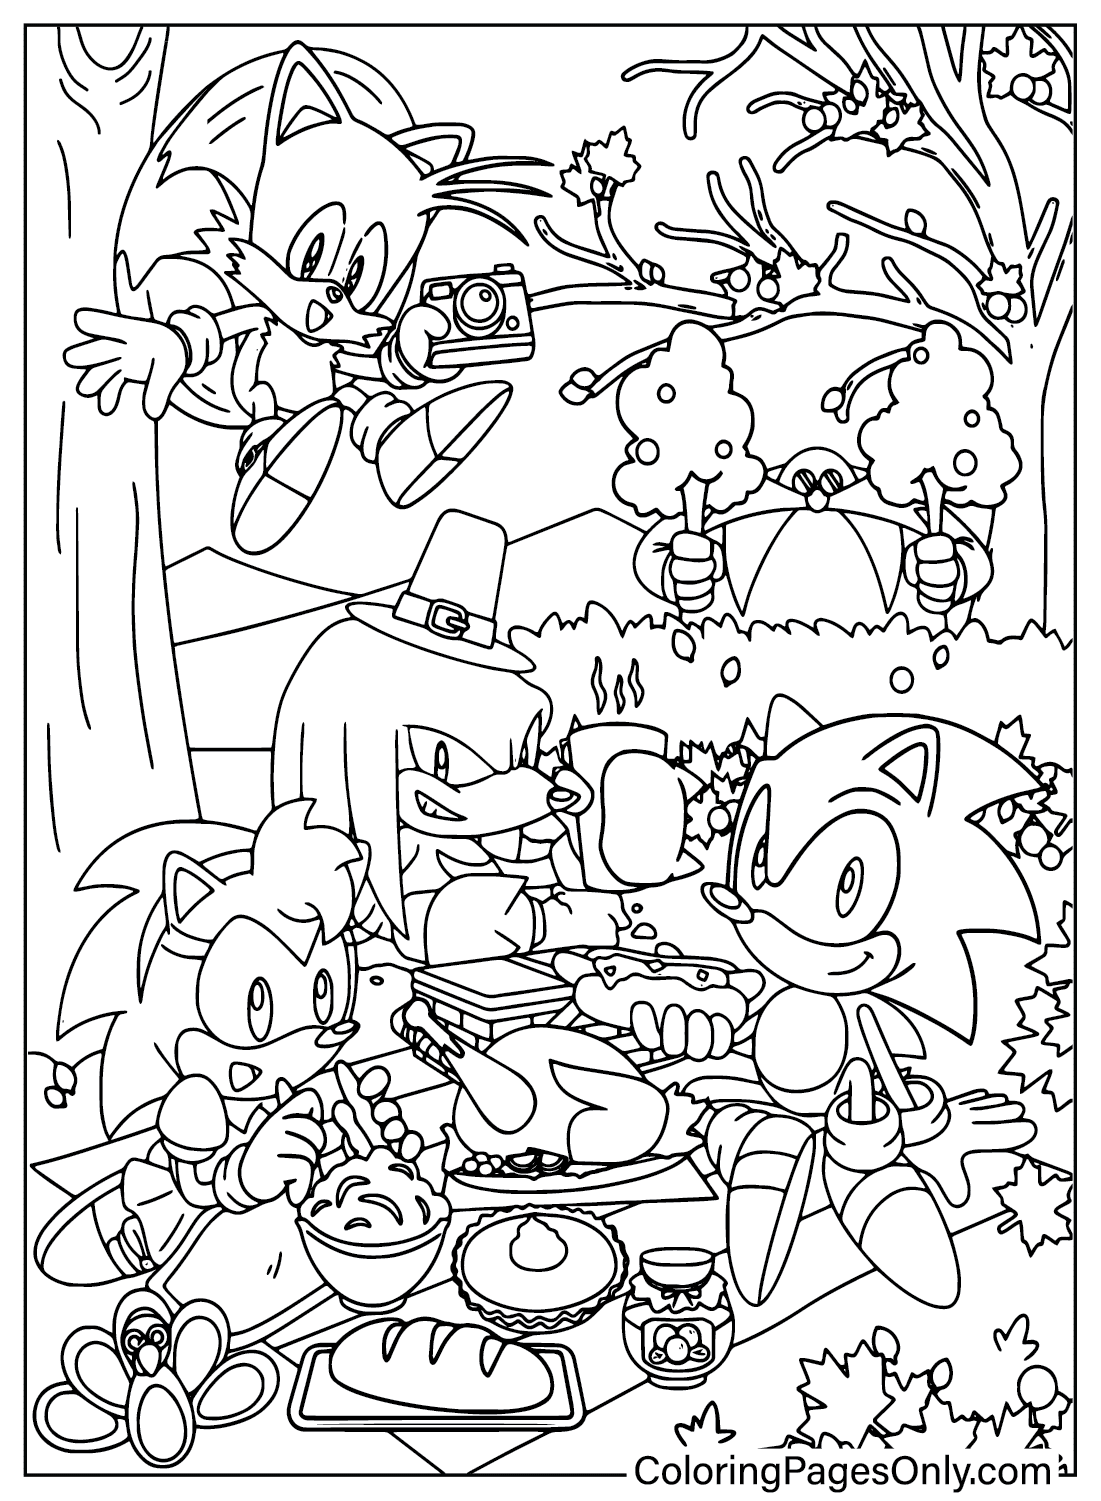 Página para colorir do Sonic de Ação de Graças do desenho animado de Ação de Graças